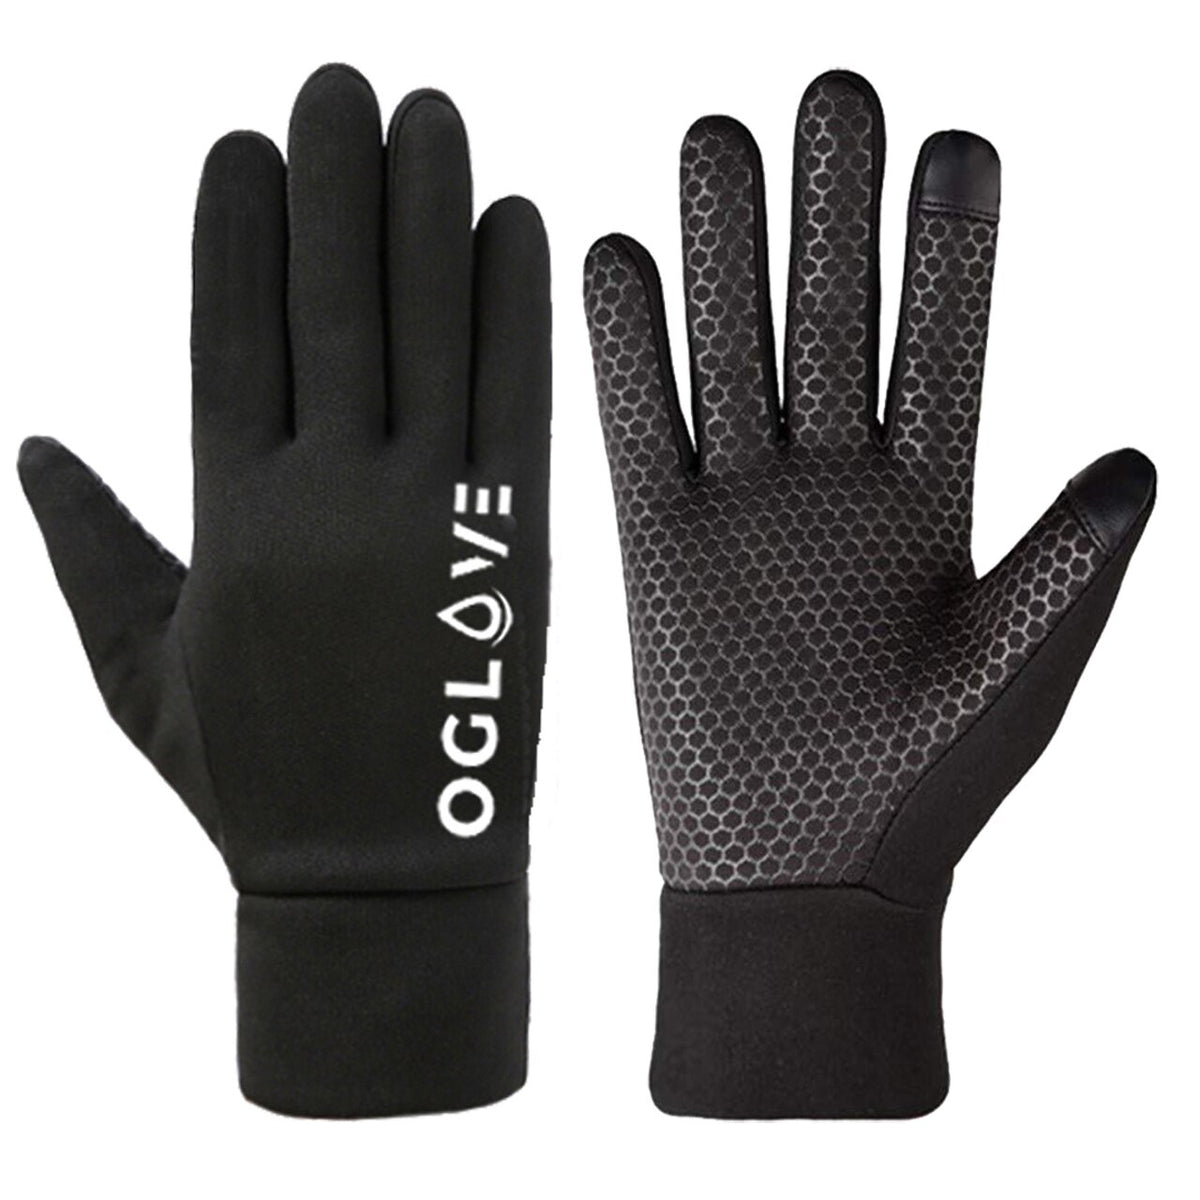 Oglove Waterproof Thermal Sport Gloves in Junior